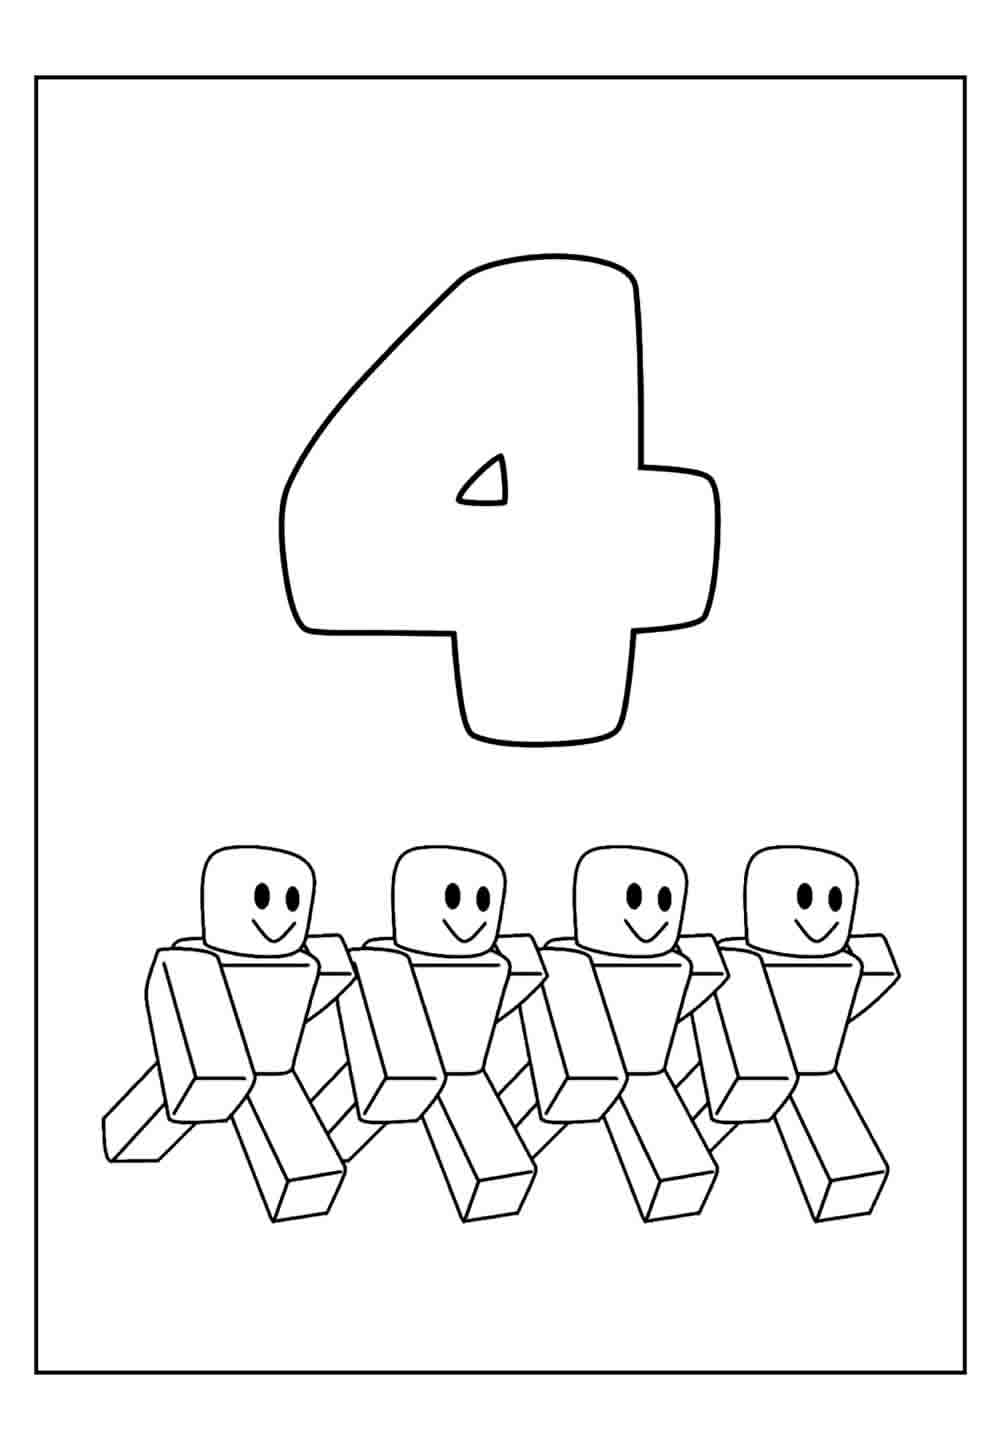 Desenho Educativo do Número 4 para colorir